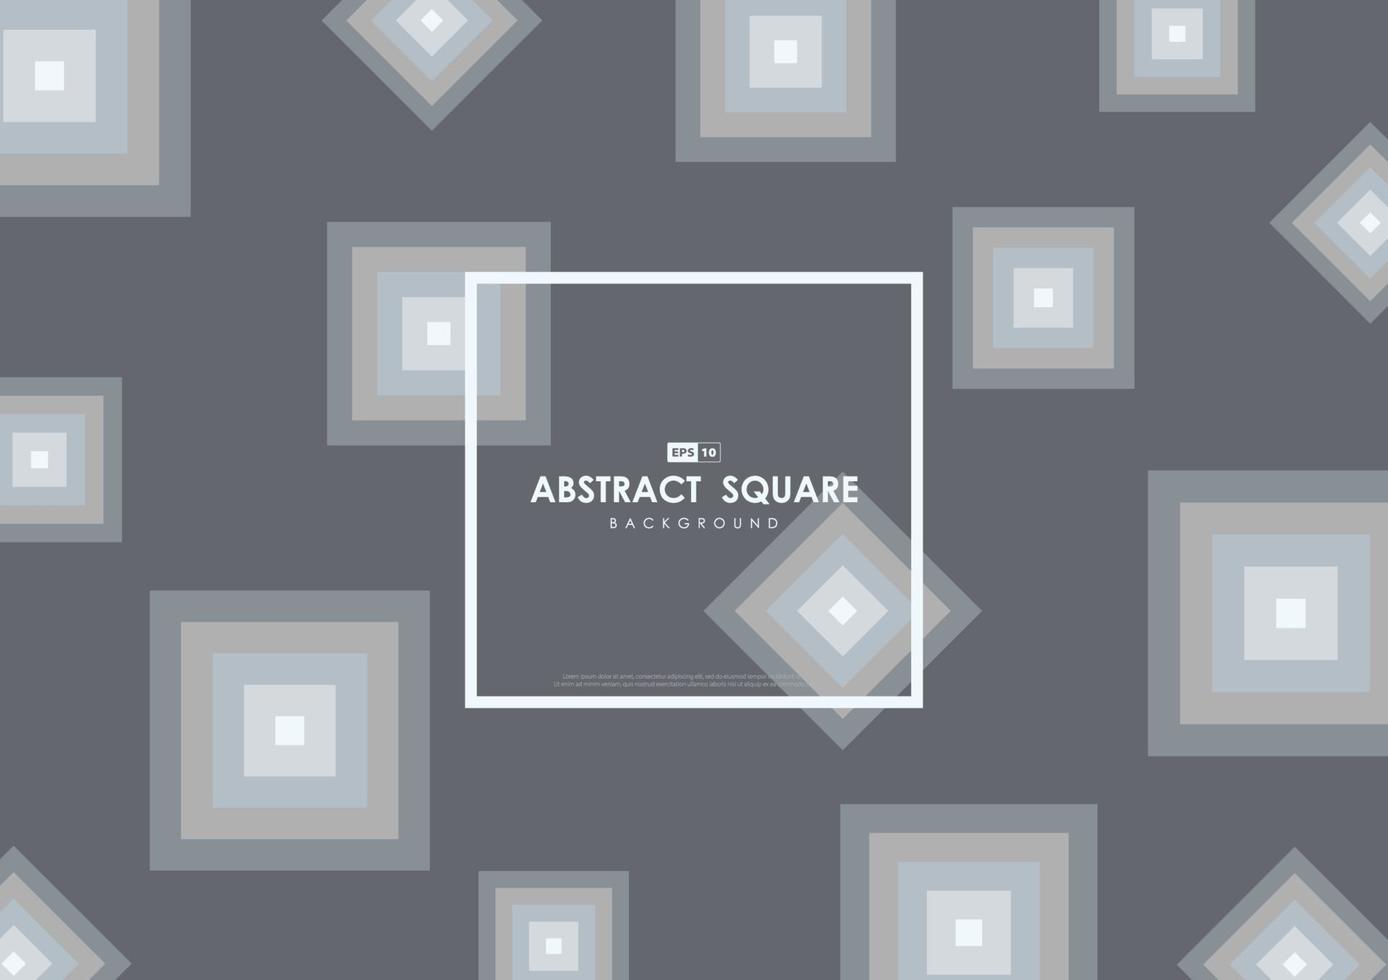 conception grise abstraite de style décoratif géométrique de modèle carré. espace de fond d'illustration de système de style. vecteur d'illustration